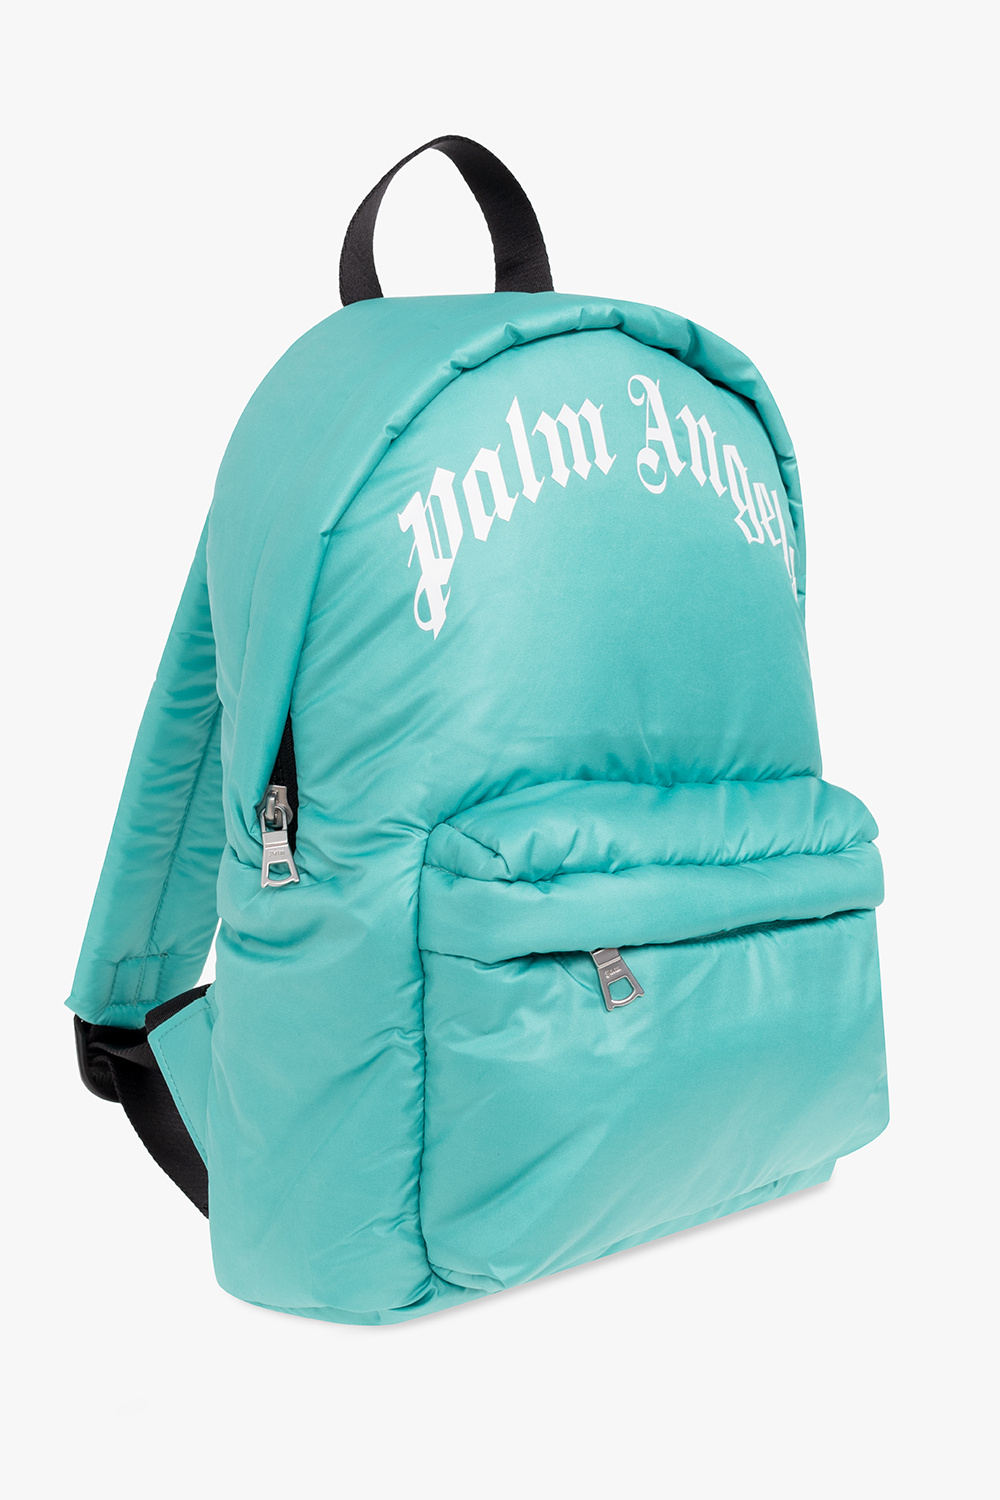 Palm Angels Kids backpack obag with logo